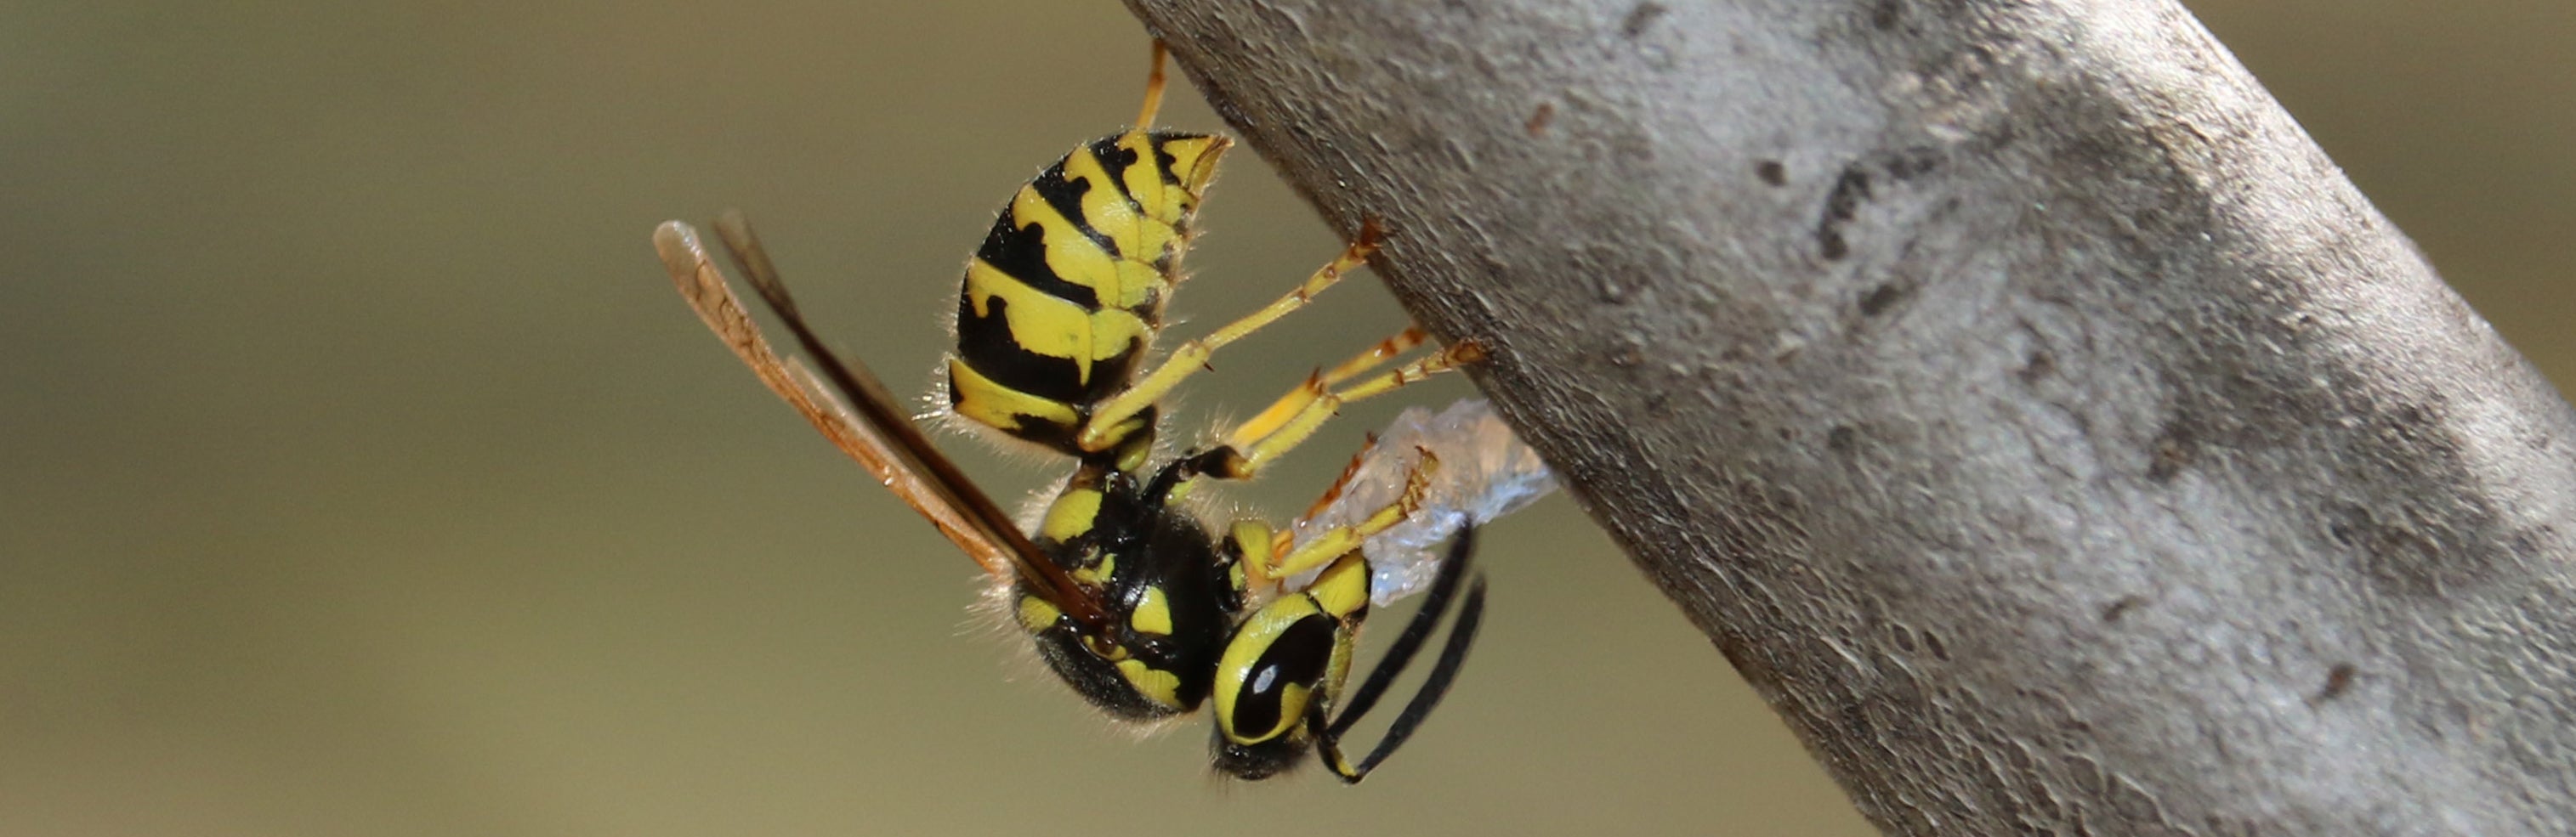 A western yellowjacket wasp handling a hydrogel bait